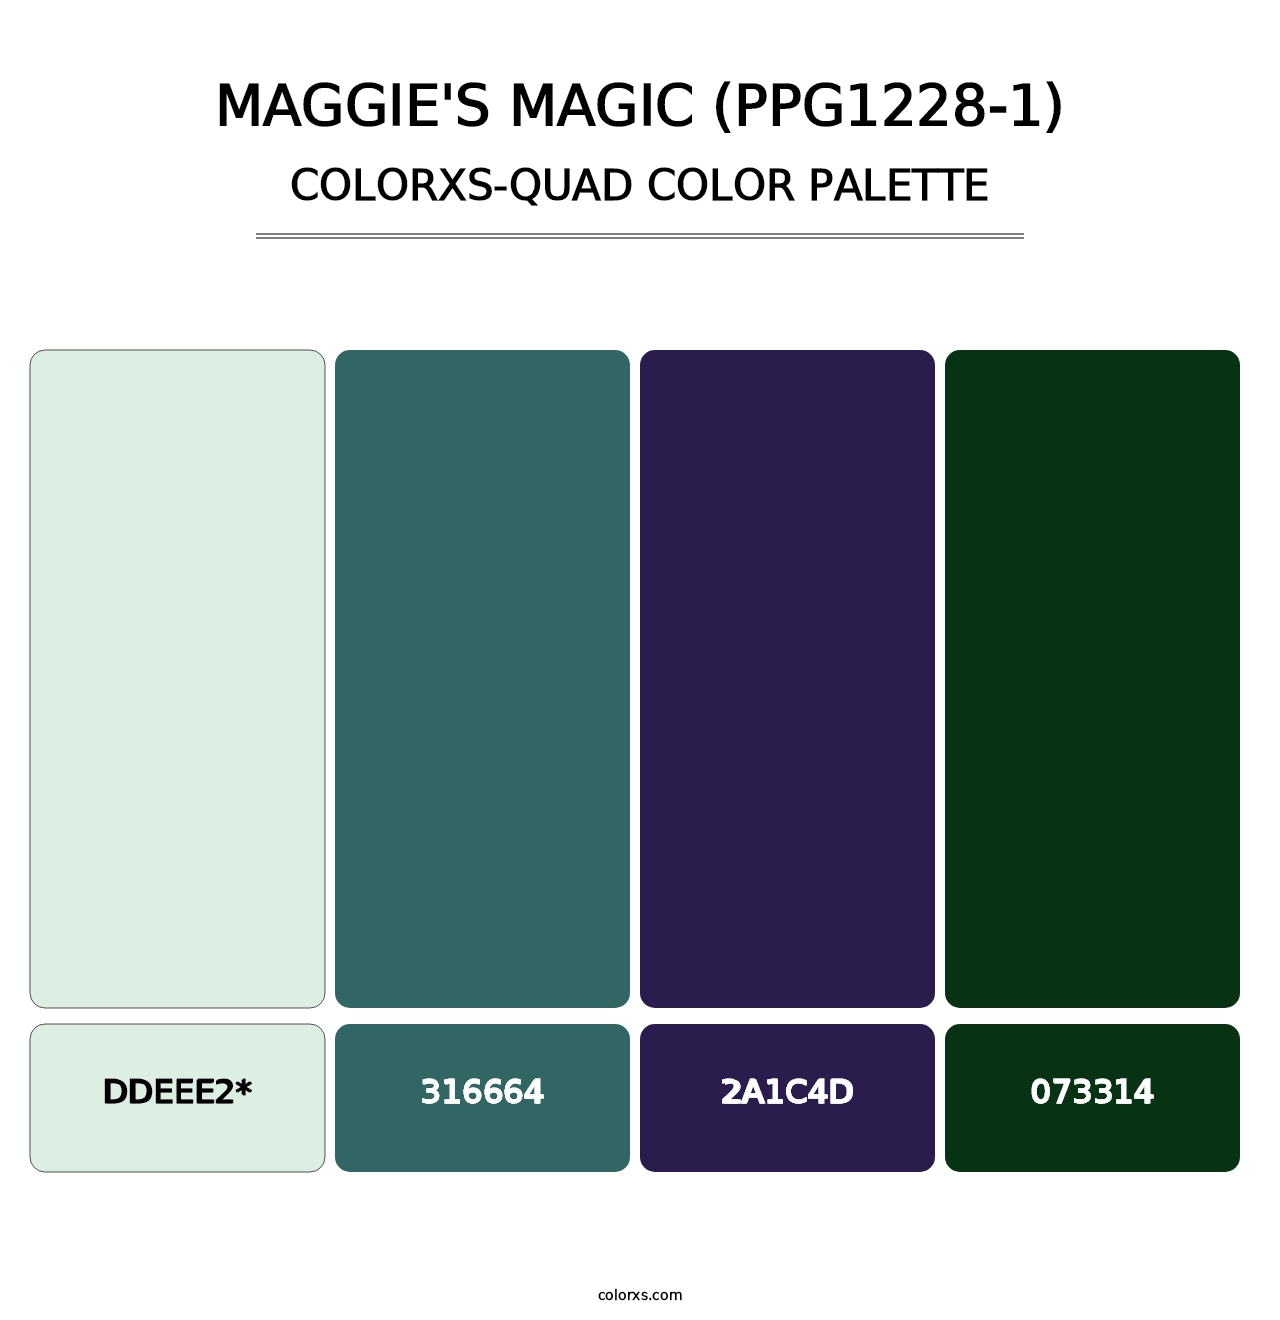 Maggie's Magic (PPG1228-1) - Colorxs Quad Palette